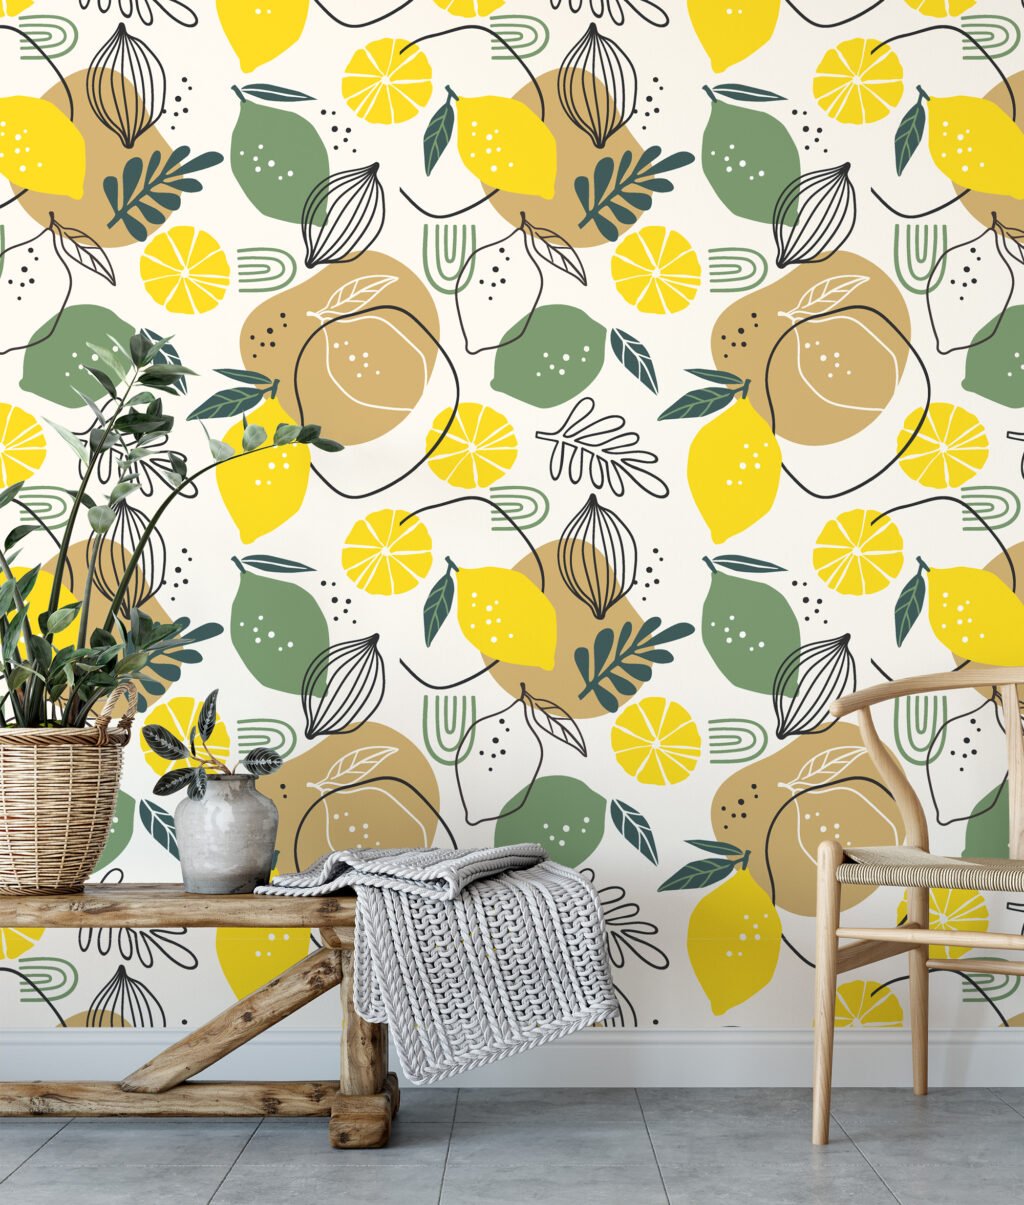 Limon ve Yapraklarla Line Art Duvar Kağıdı, Turunçgil Tasarımı Duvar Posteri Çiçekli Duvar Kağıtları 2